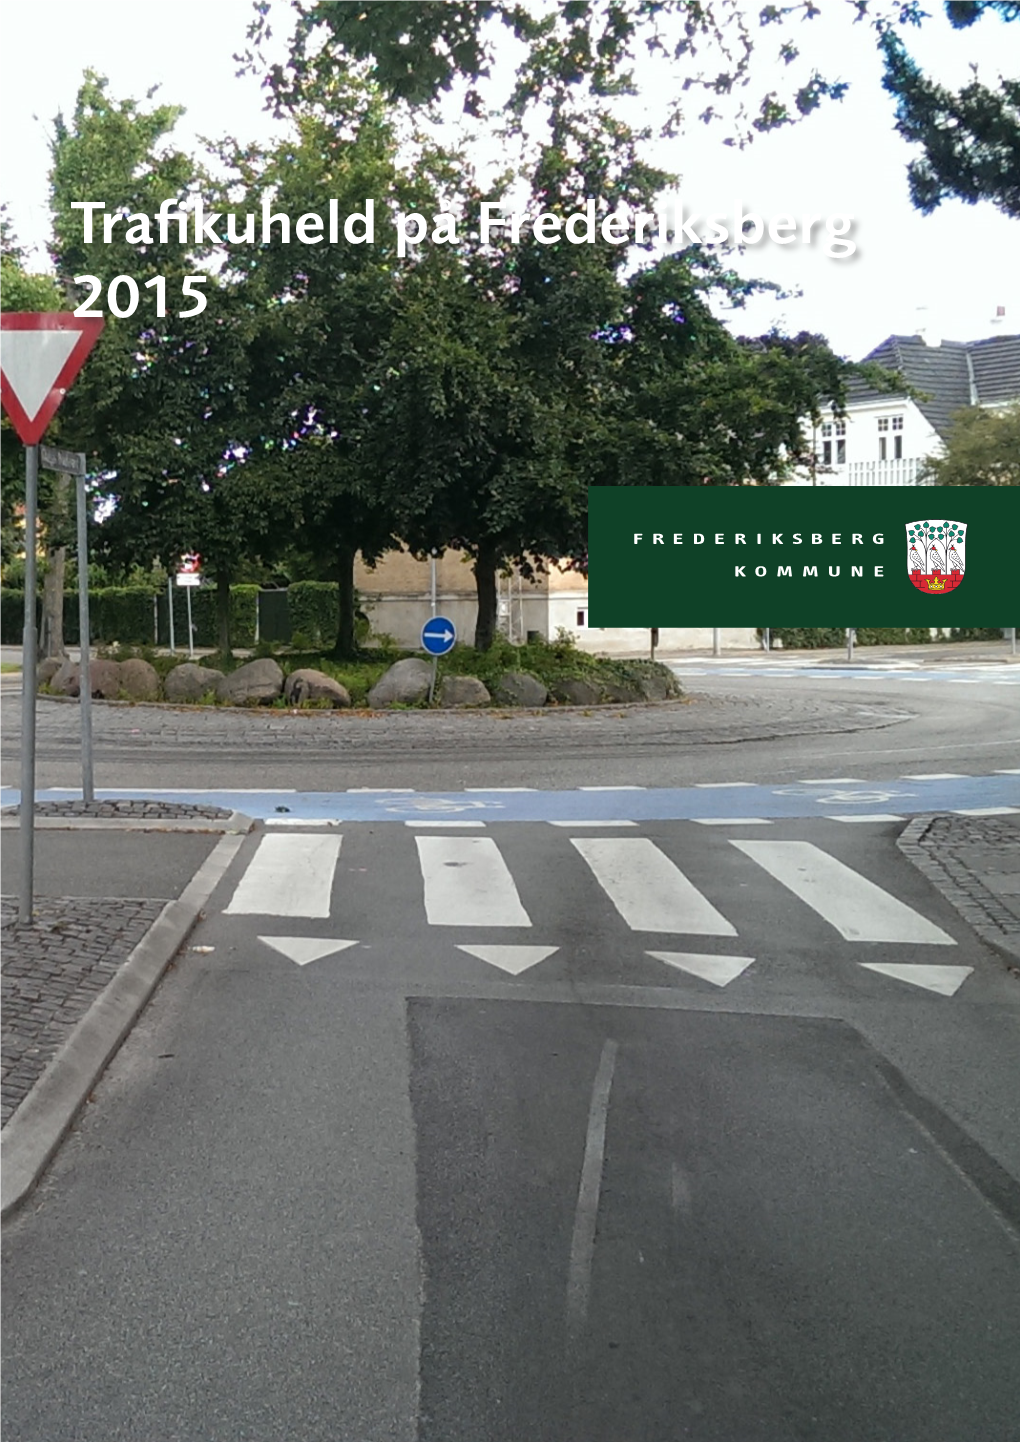 Trafikuheld På Frederiksberg 2015 Indholdsfortegnelse